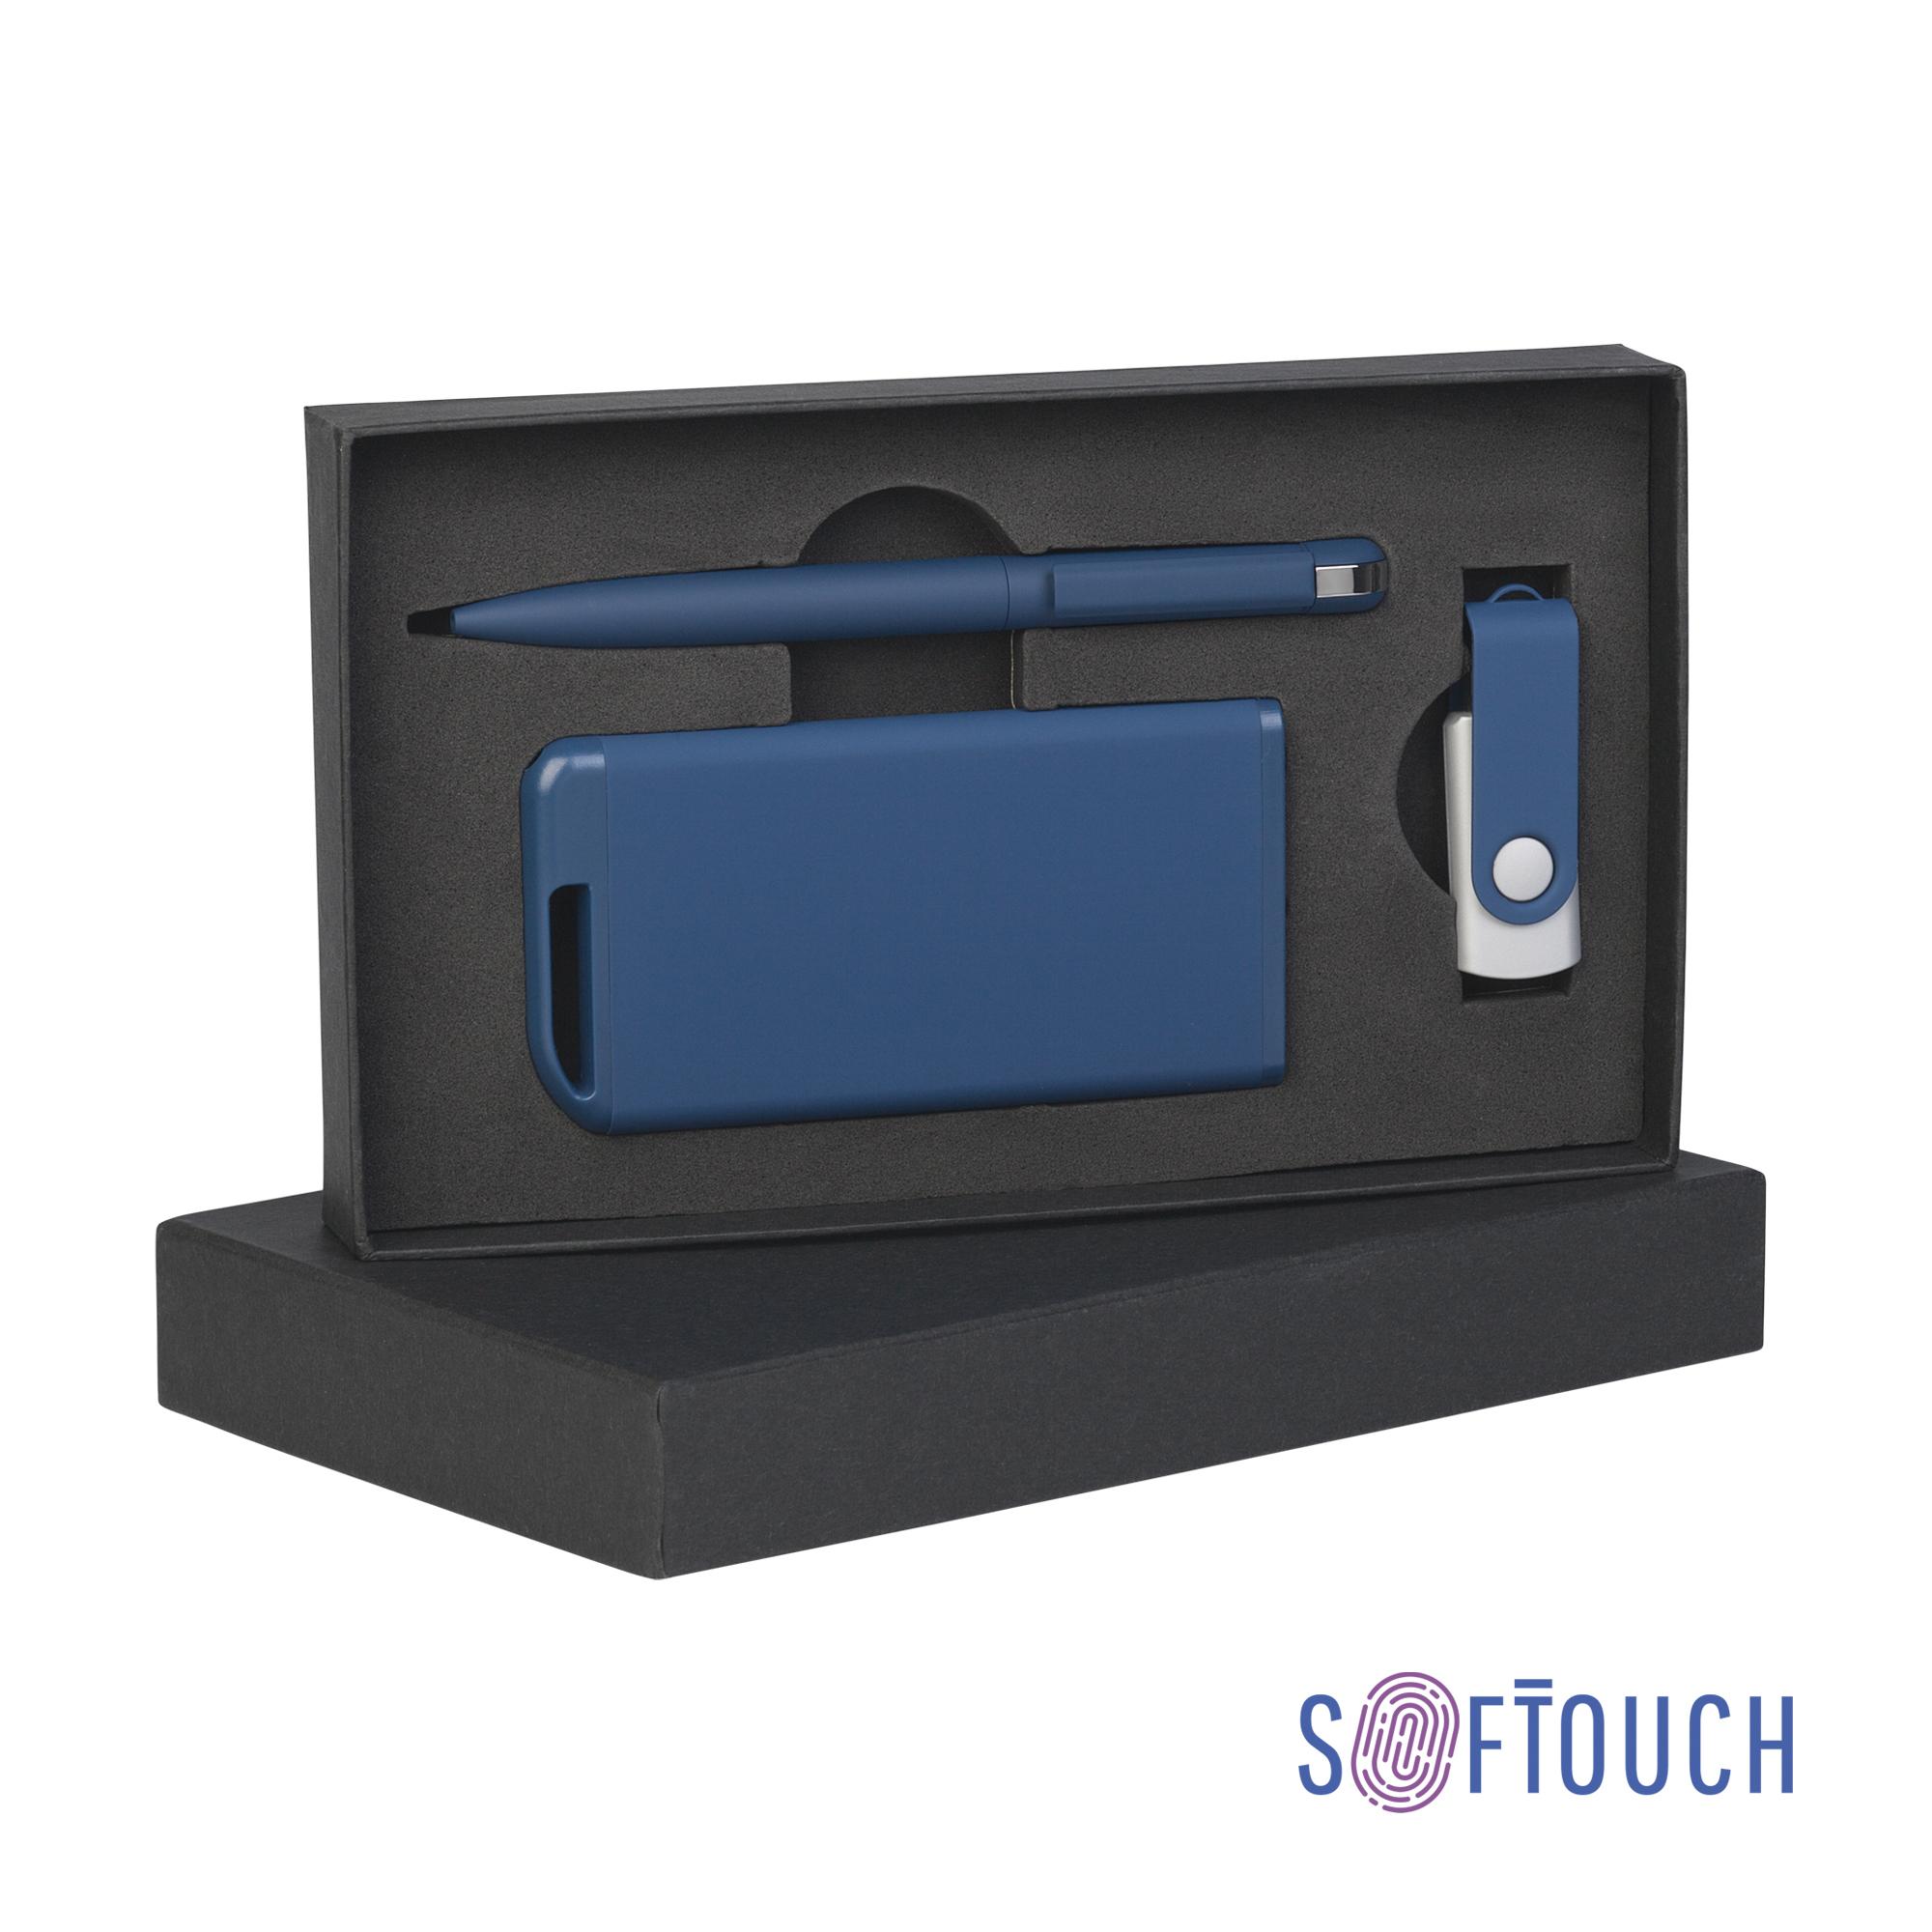 Набор ручка + флеш-карта 16Гб + зарядное устройство 4000 mAh в футляре покрытие soft touch, цвет темно-синий